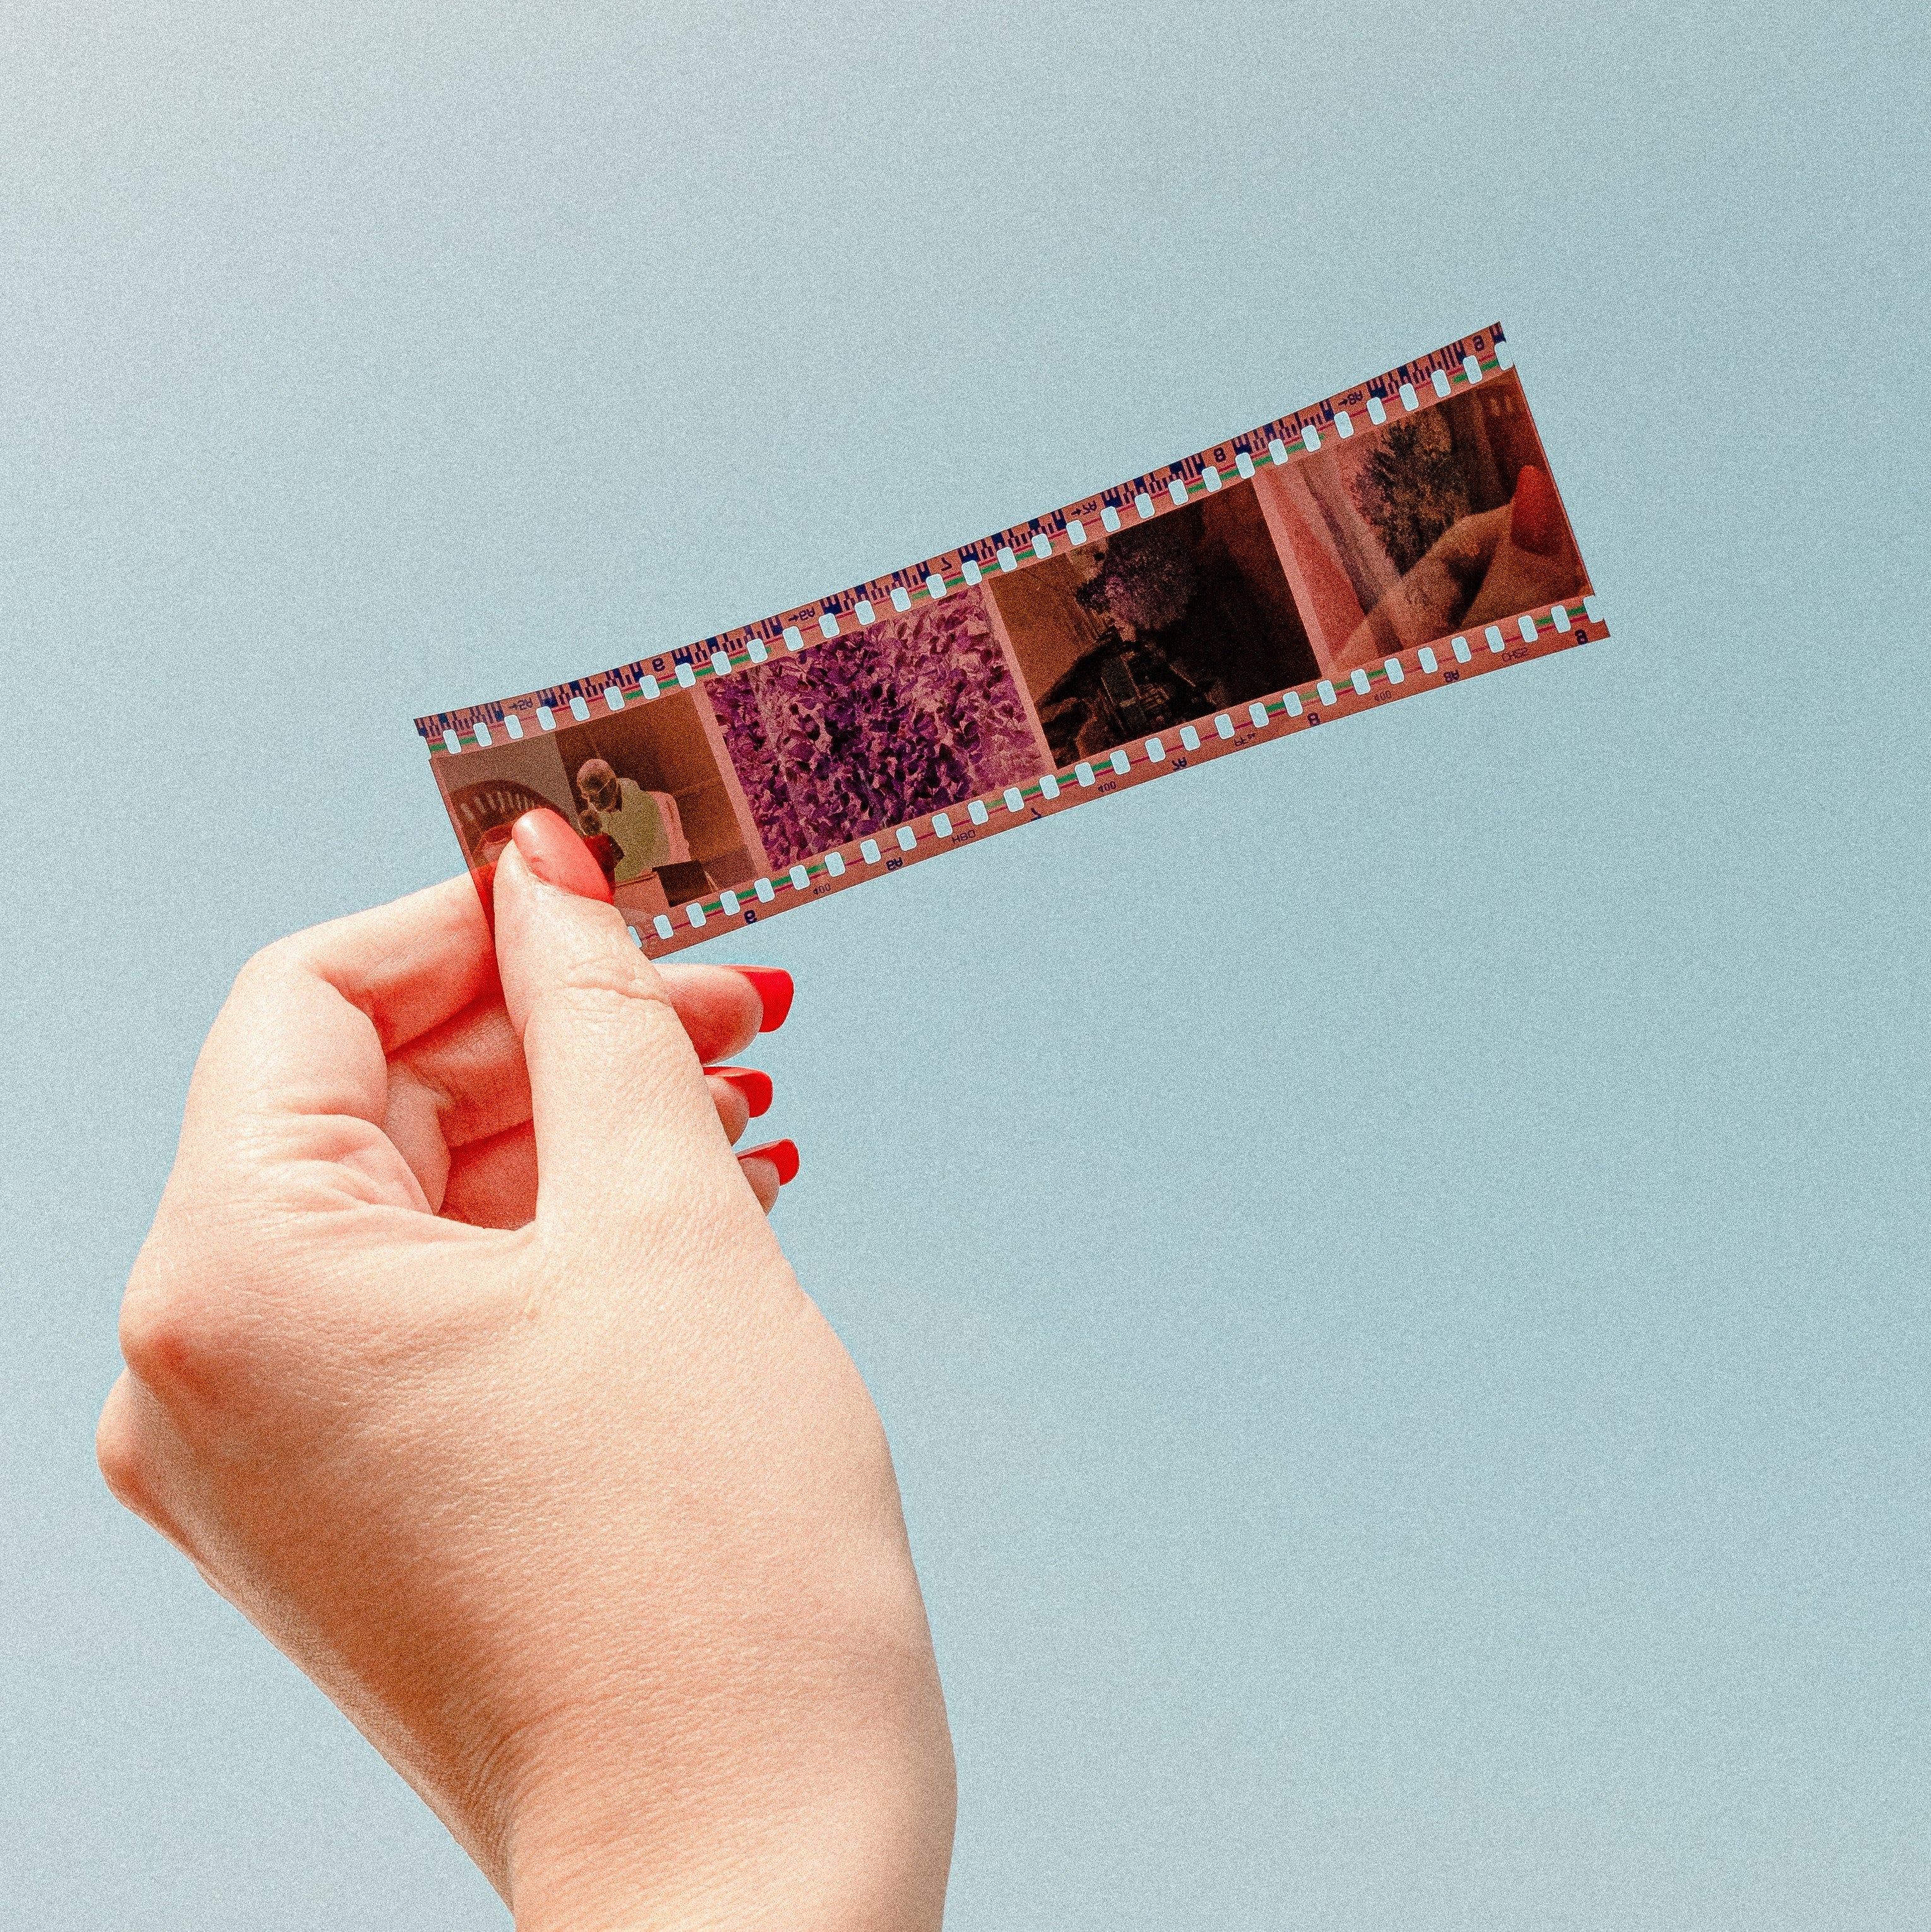 35mm Film Strip Scanning